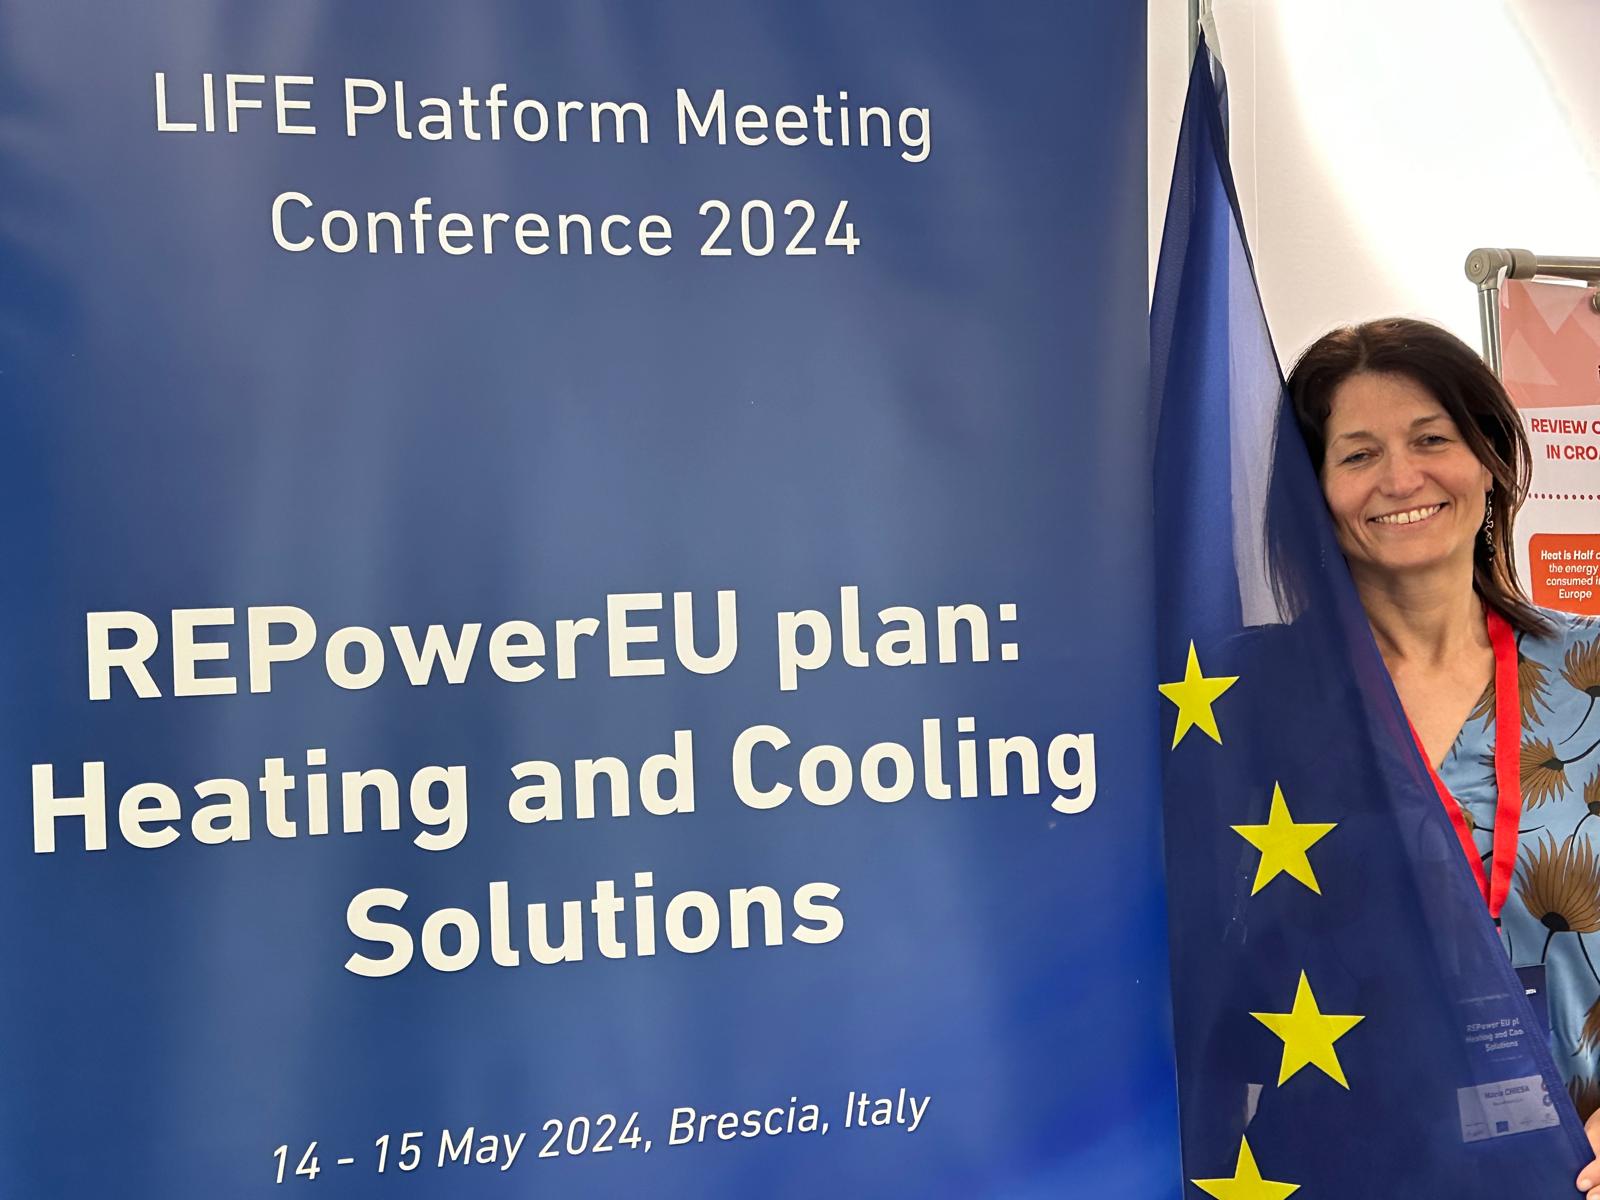 Dr Maria Chiesa at Life Platform Meeting Conference 2024